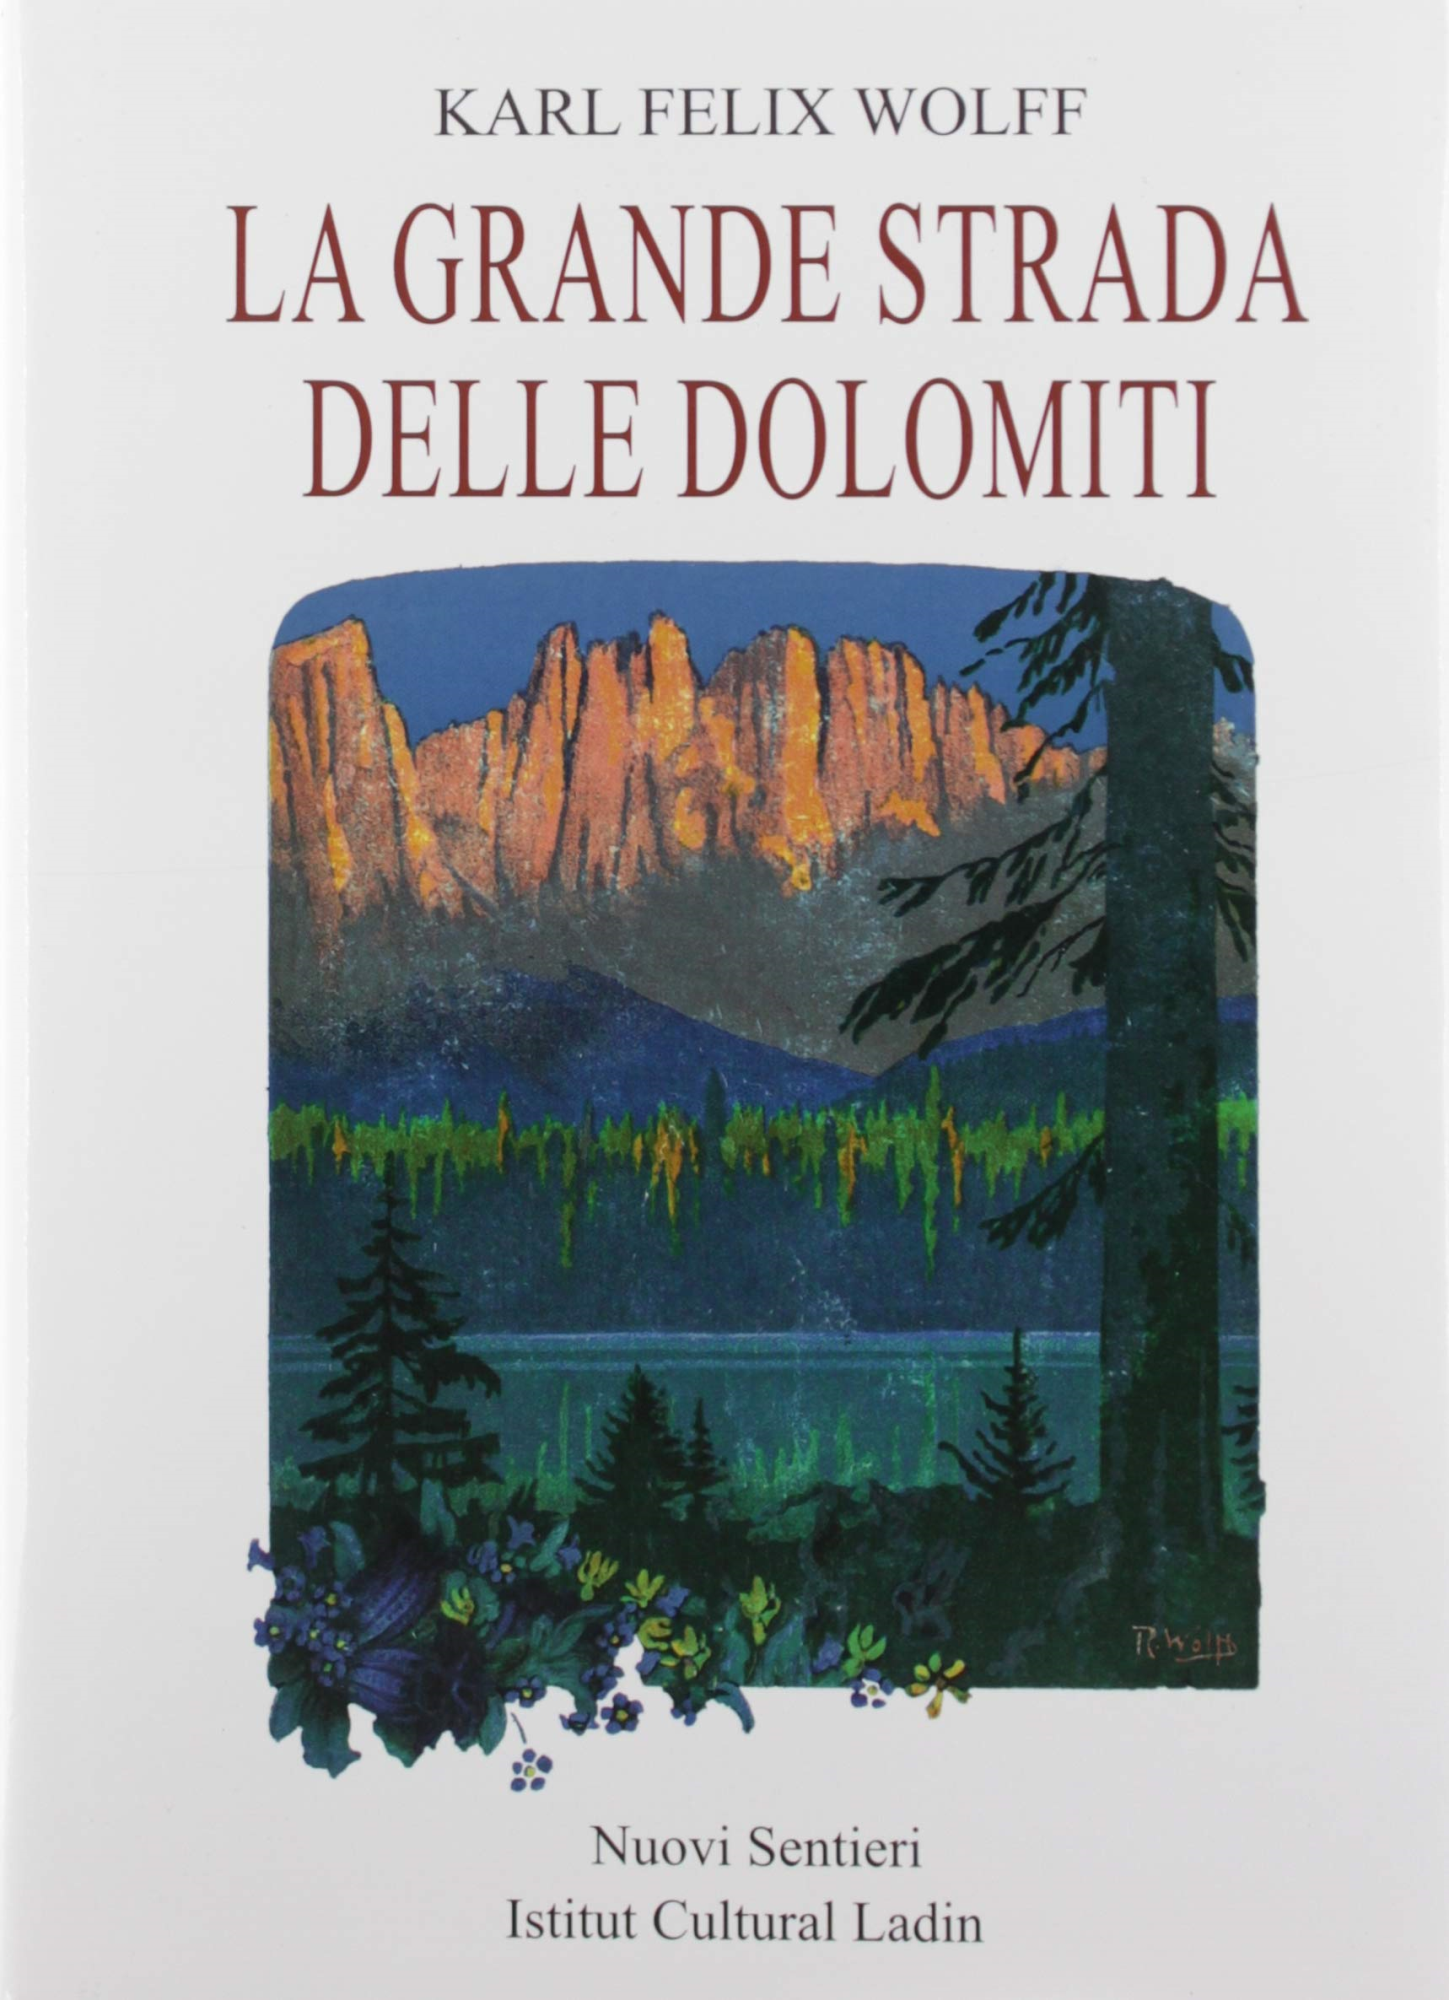 Libri Giovanni Salerno - Rifugiato In Montagna NUOVO SIGILLATO, EDIZIONE DEL 31/07/2019 SUBITO DISPONIBILE